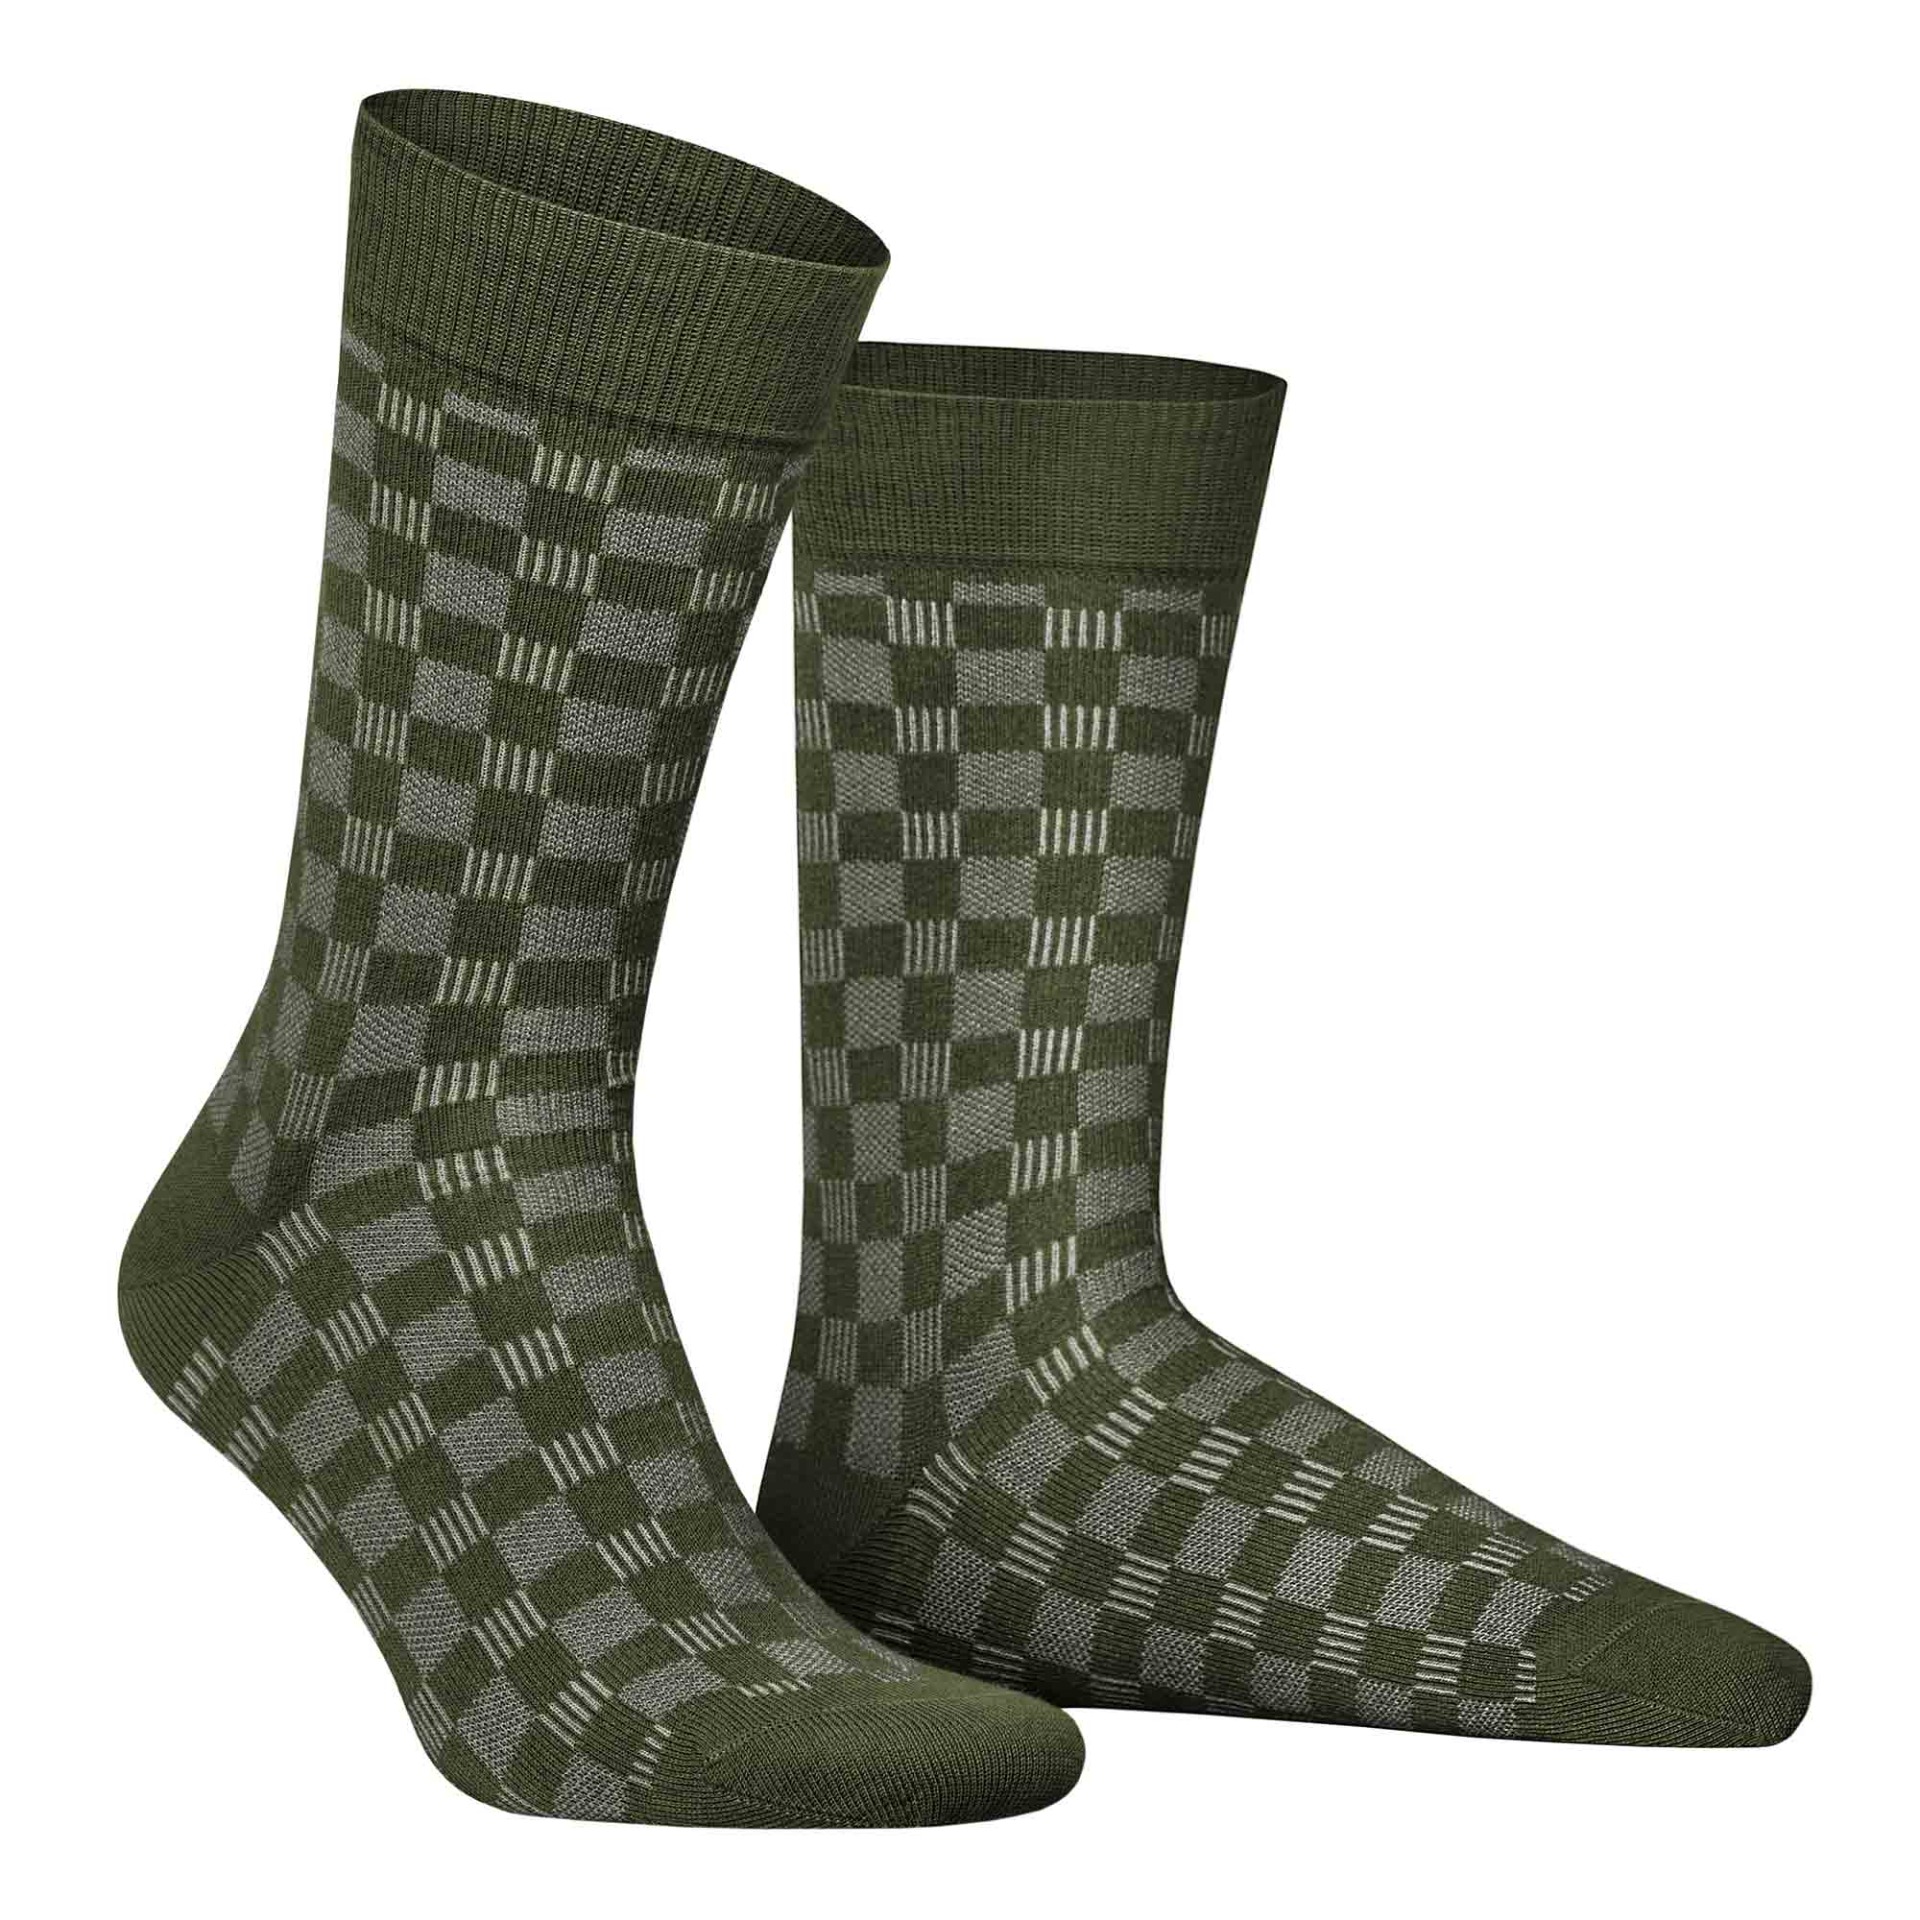 HUDSON Herren BOARD -  39/42 - Socken mit Schachbrett-Muster - Army green 0112 (Grün)